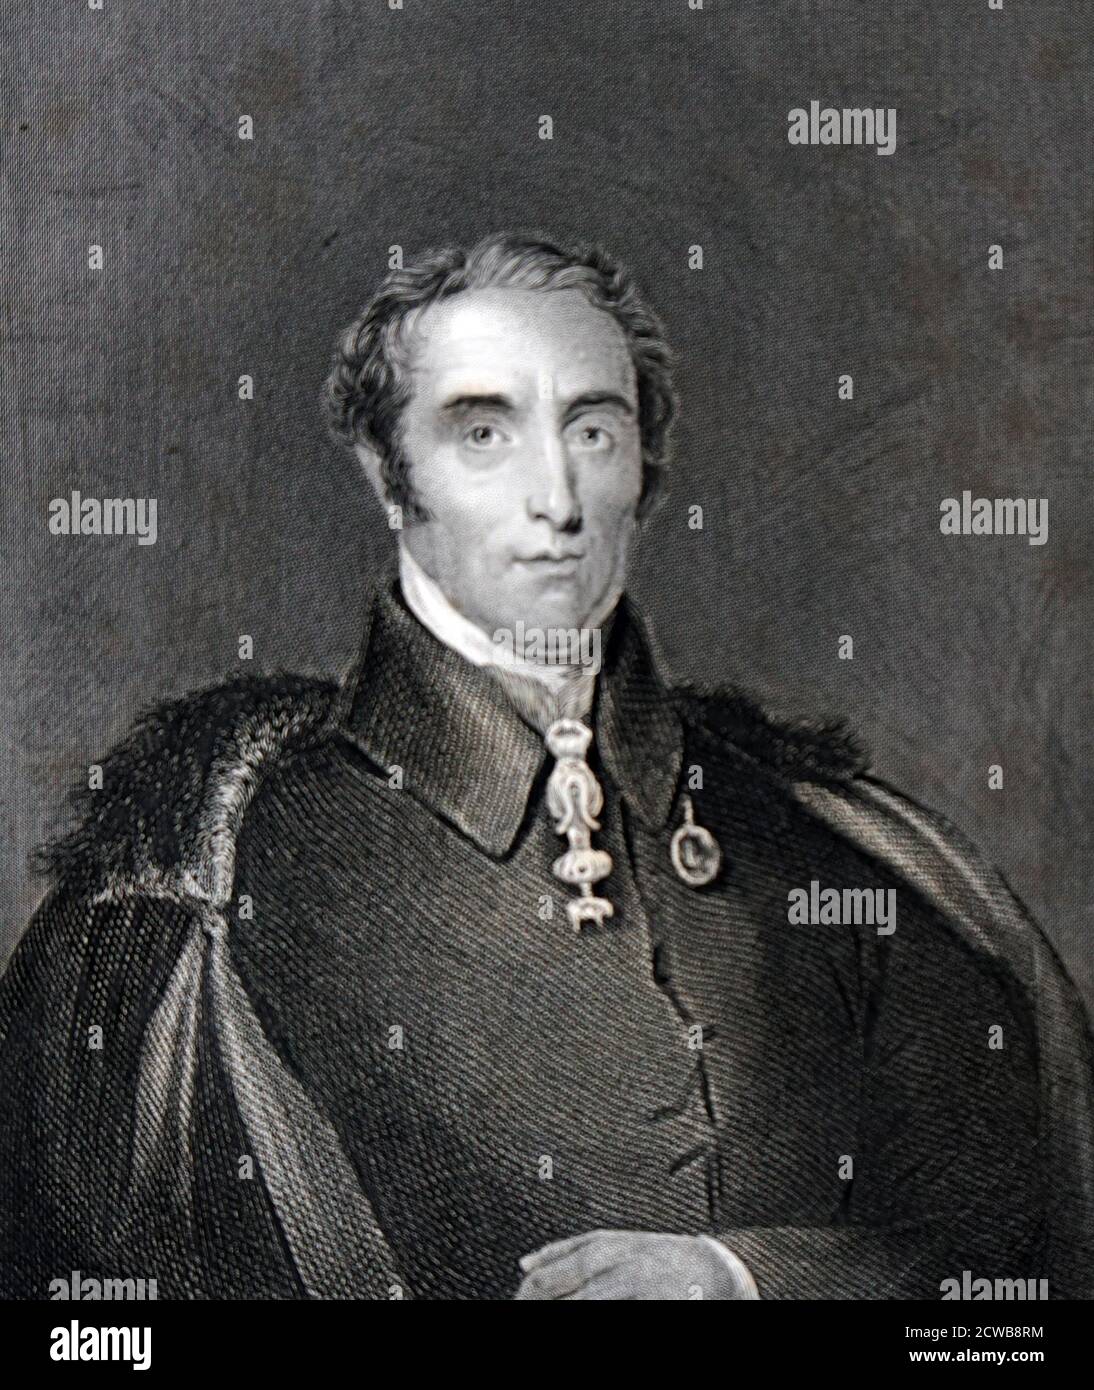 Arthur Wellesley, 1. Herzog von Wellington, (1. Mai 1769 - 14. September 1852) war ein anglo-irischer Soldat und Tory-Staatsmann, einer der führenden militärischen und politischen Persönlichkeiten des Britanniens des 19. Jahrhunderts, der zweimal als Premierminister diente. Er gewann einen bemerkenswerten Sieg gegen Napoleon in der Schlacht von Waterloo in 1815. Stockfoto